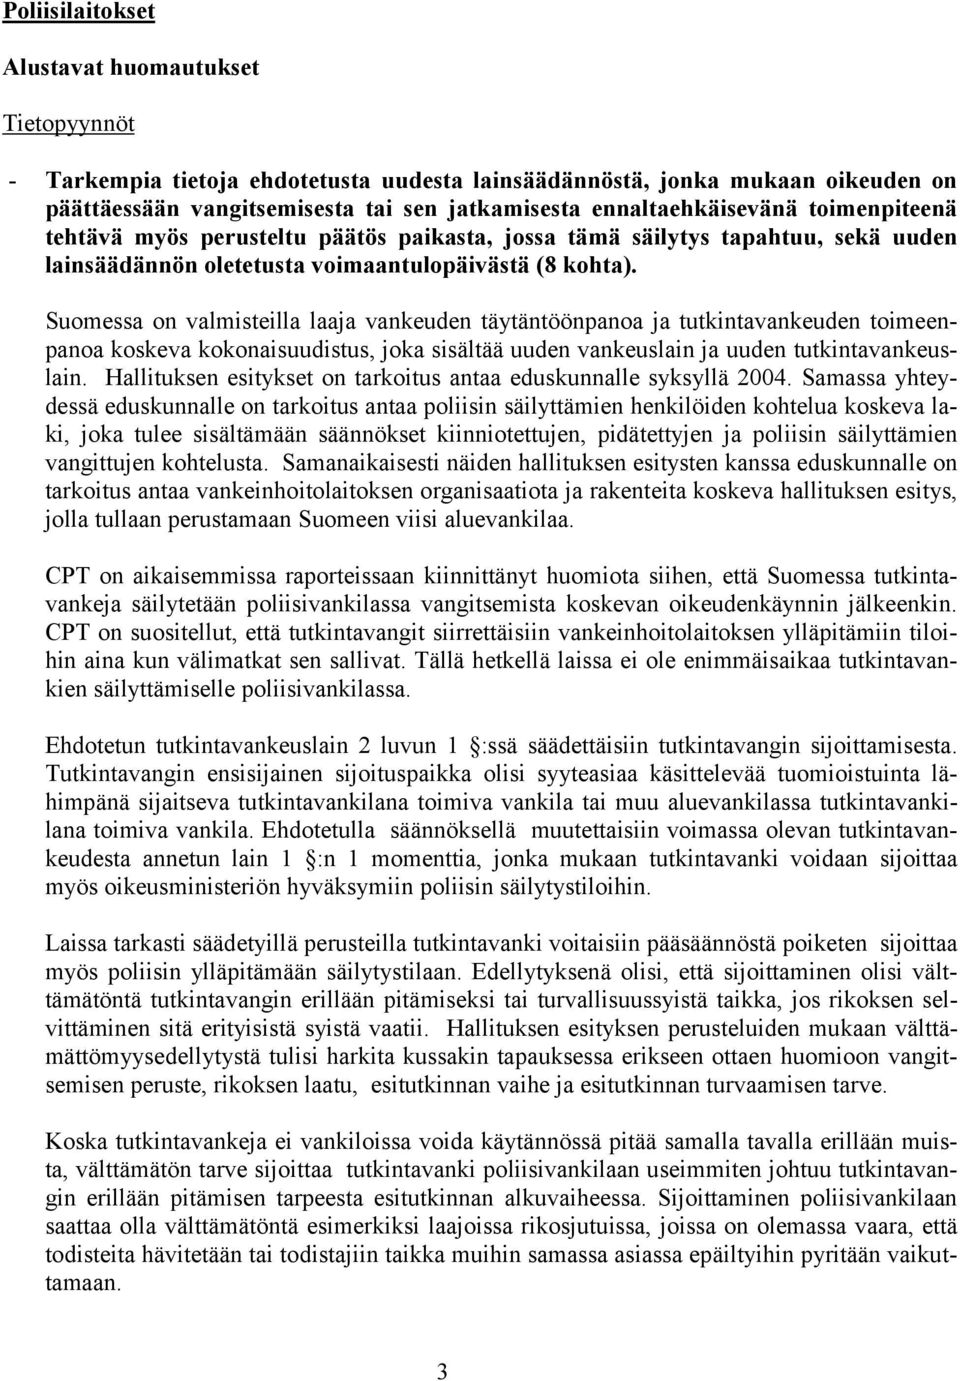 Suomessa on valmisteilla laaja vankeuden täytäntöönpanoa ja tutkintavankeuden toimeenpanoa koskeva kokonaisuudistus, joka sisältää uuden vankeuslain ja uuden tutkintavankeuslain.